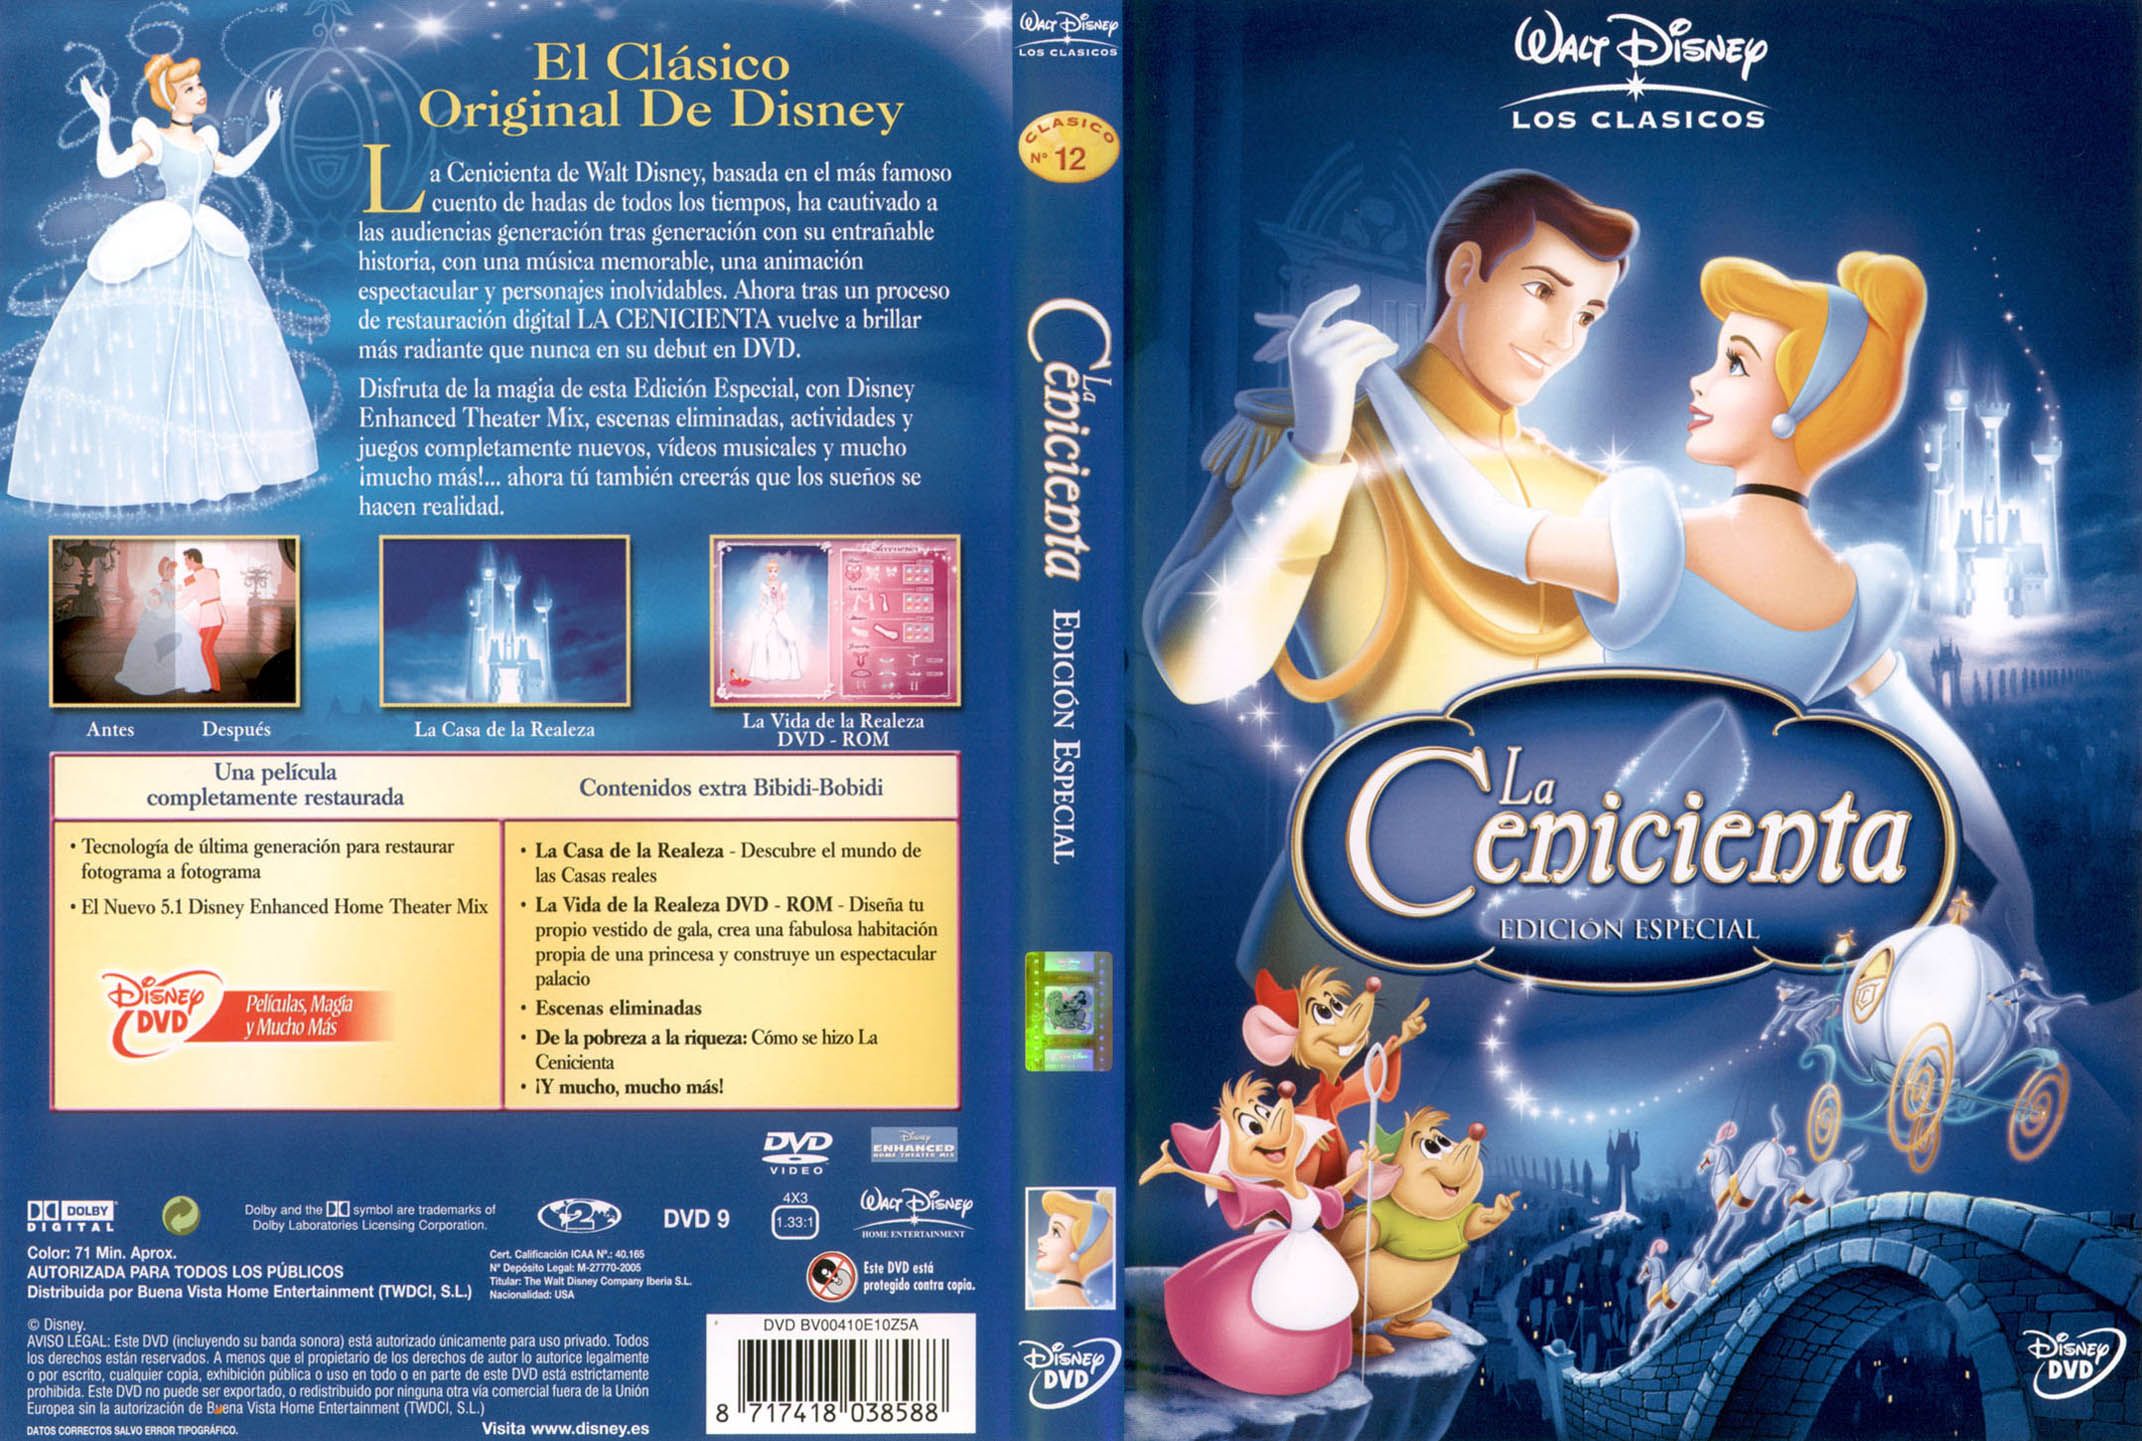 La Cenicienta: Edición Especial - DVD - Tus Princesas Disney